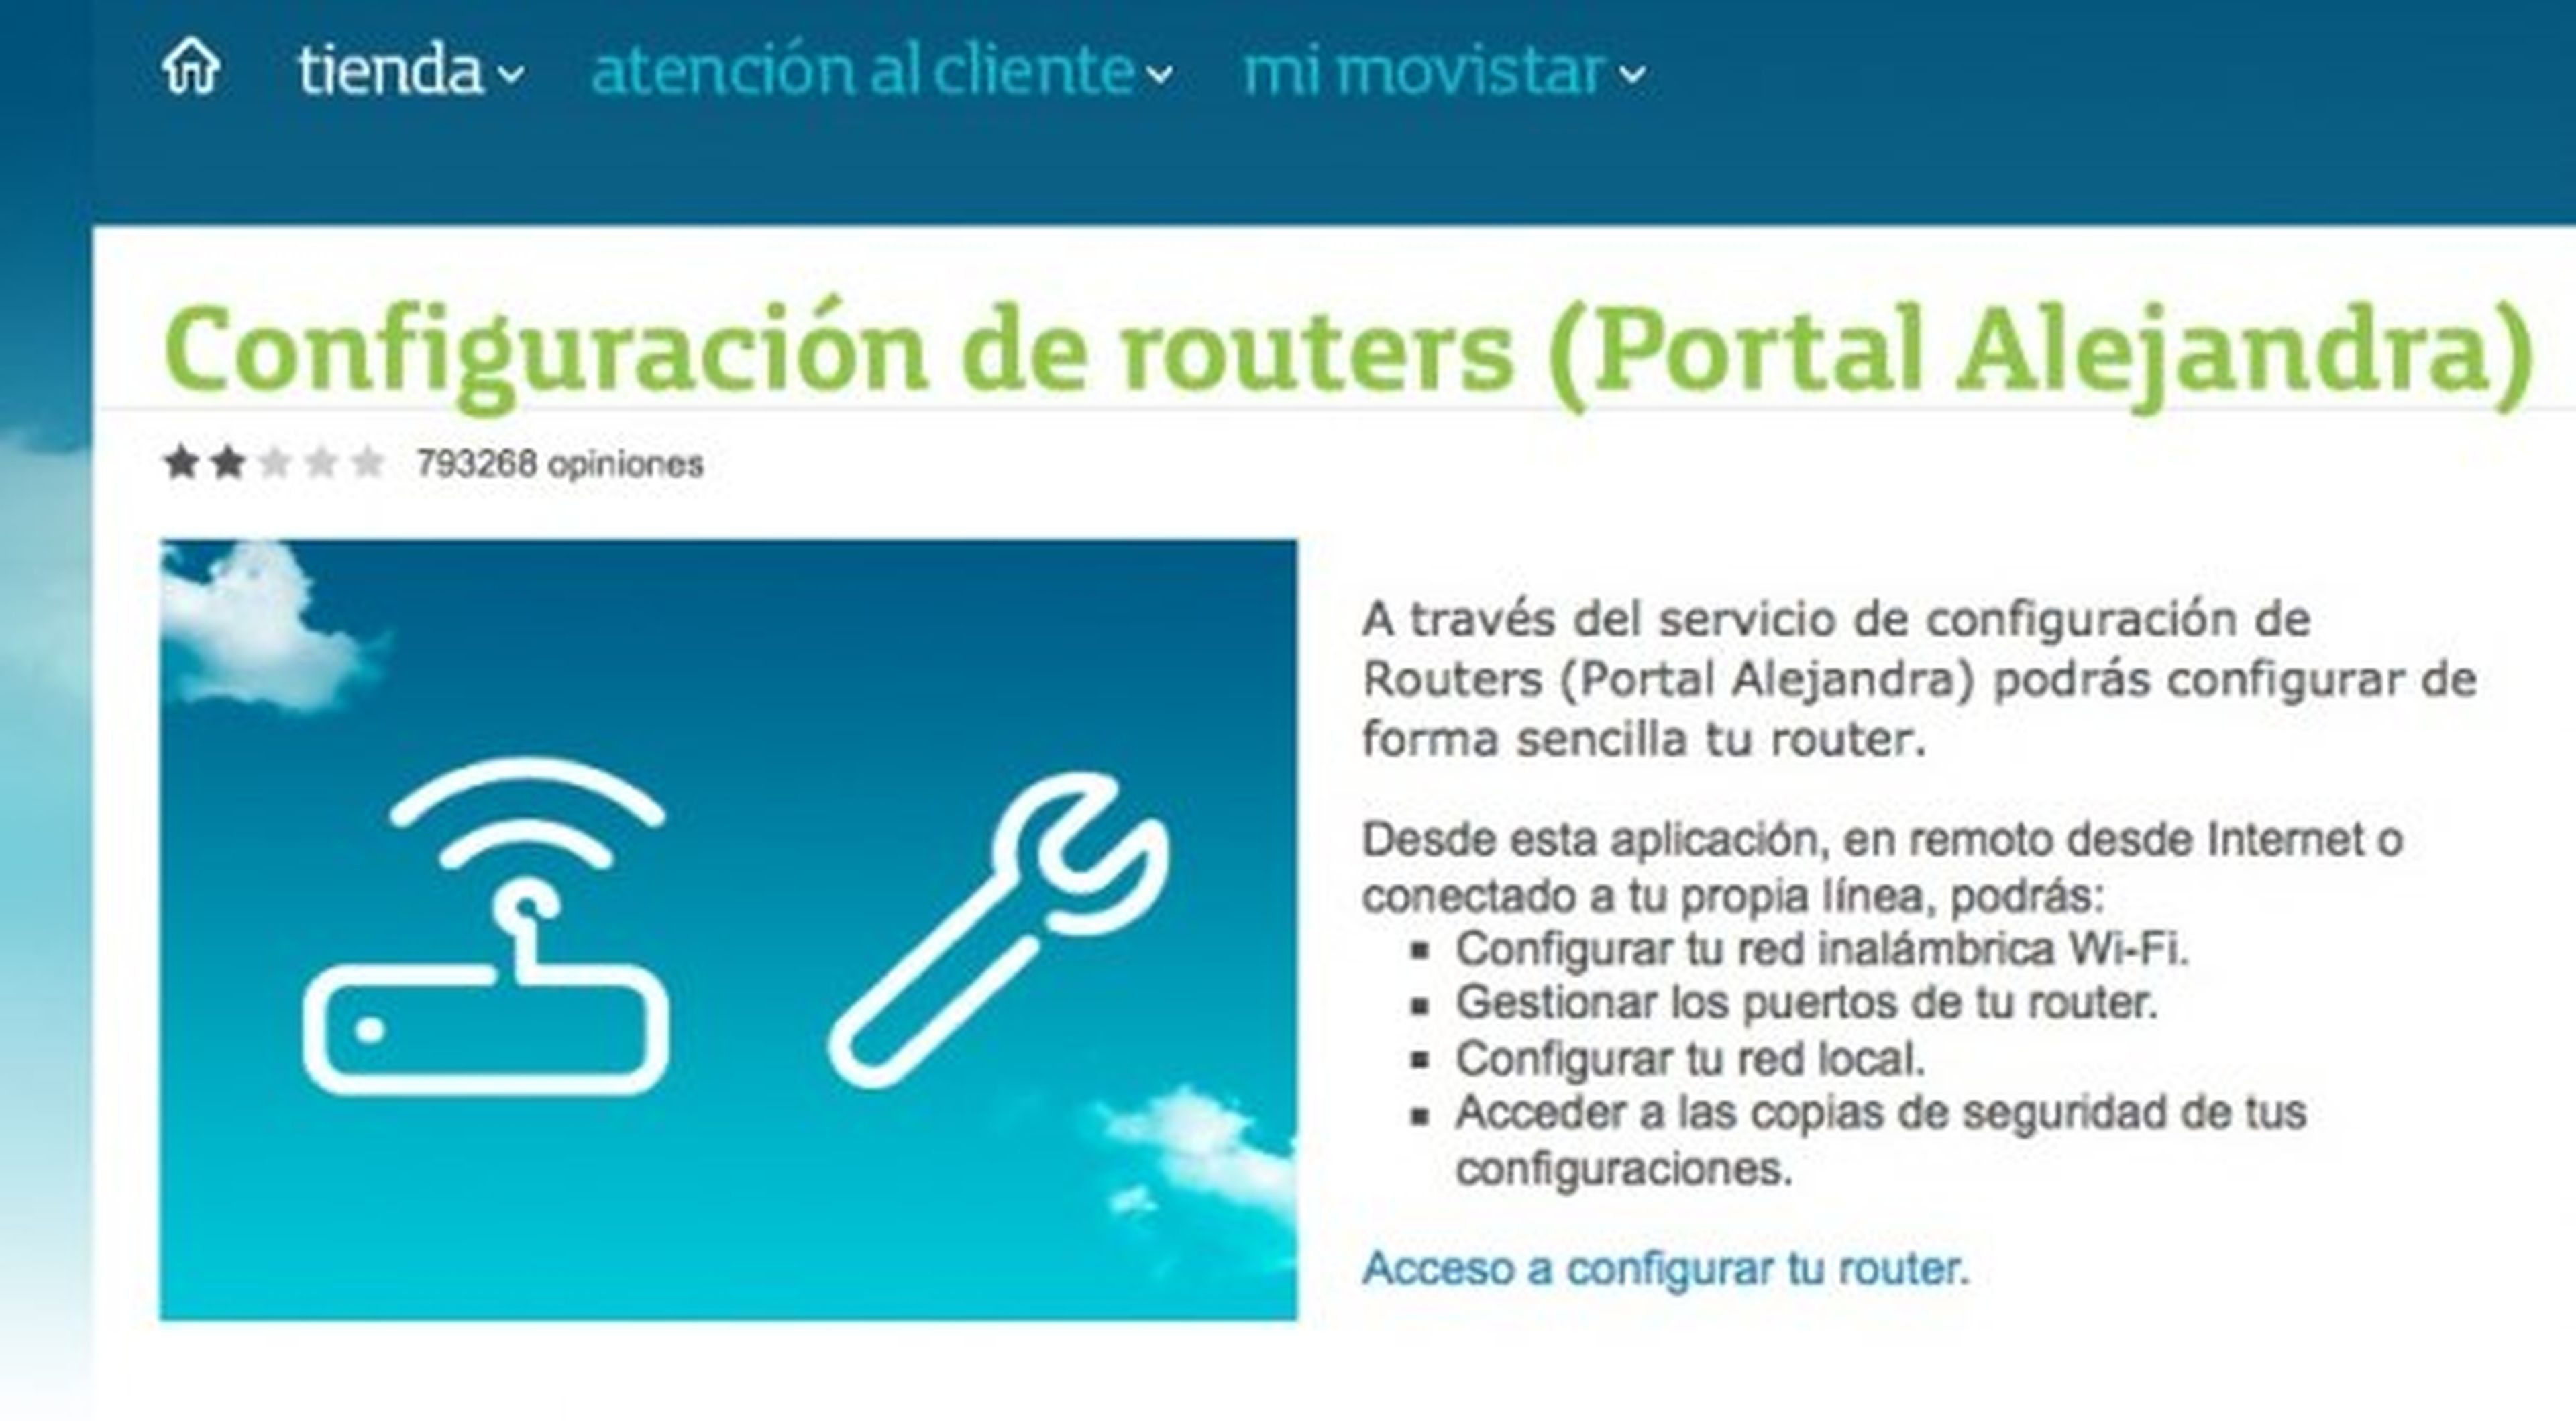 Accede al servicio de configuración de routers Movistar